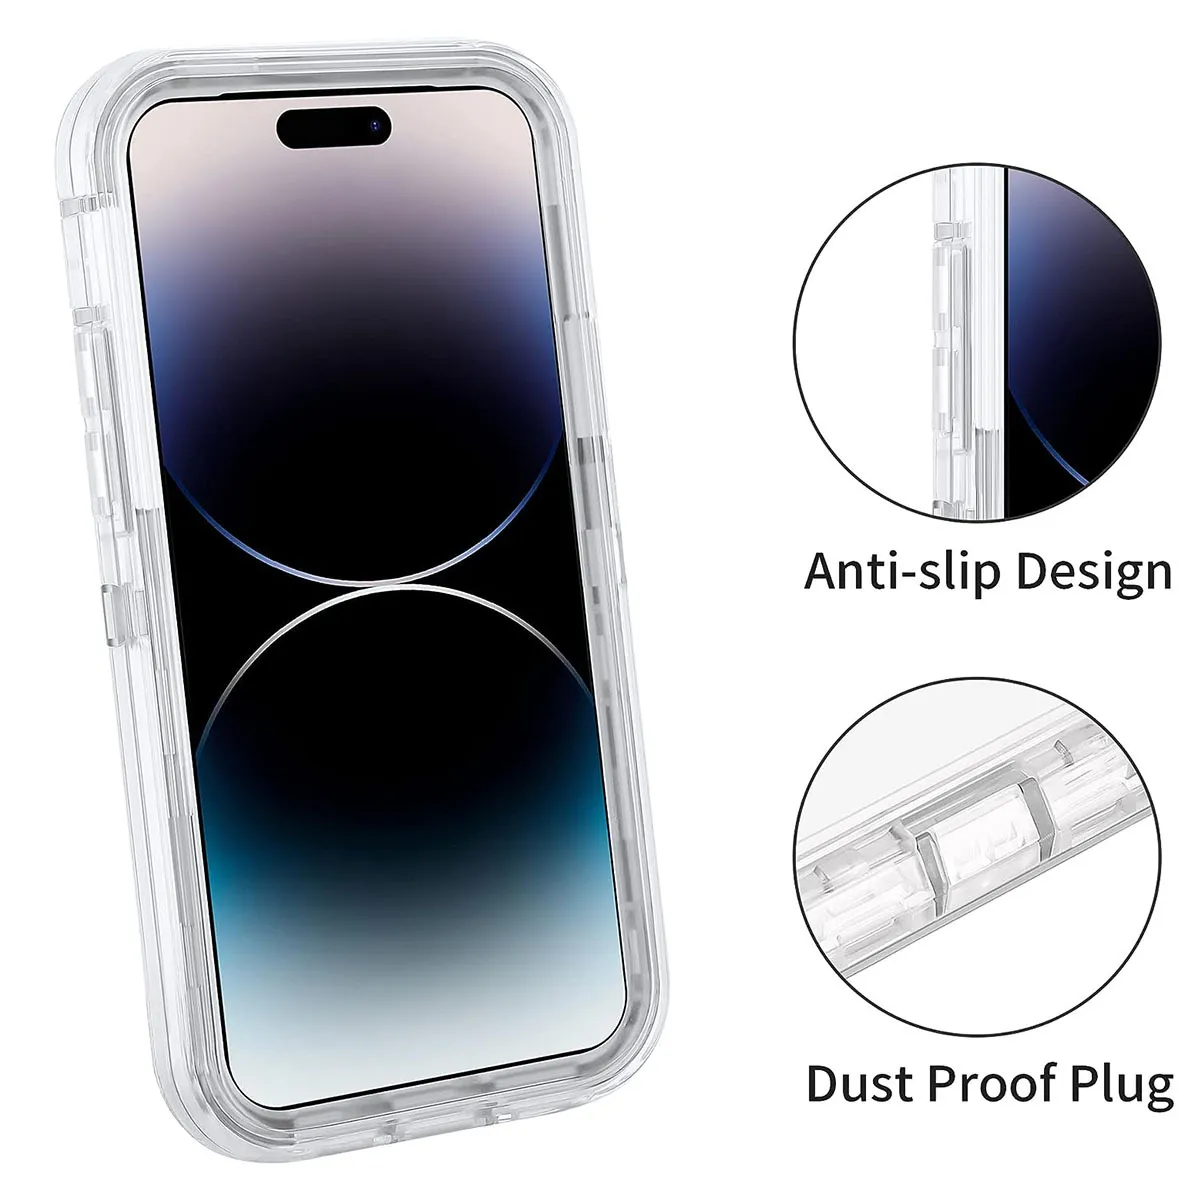 Coque de protection transparente robuste pour iPhone 14 Pro Max : conception double couche supérieure, pare-chocs en PC résistant aux chocs, dos en TPU souple pour une meilleure prise en main